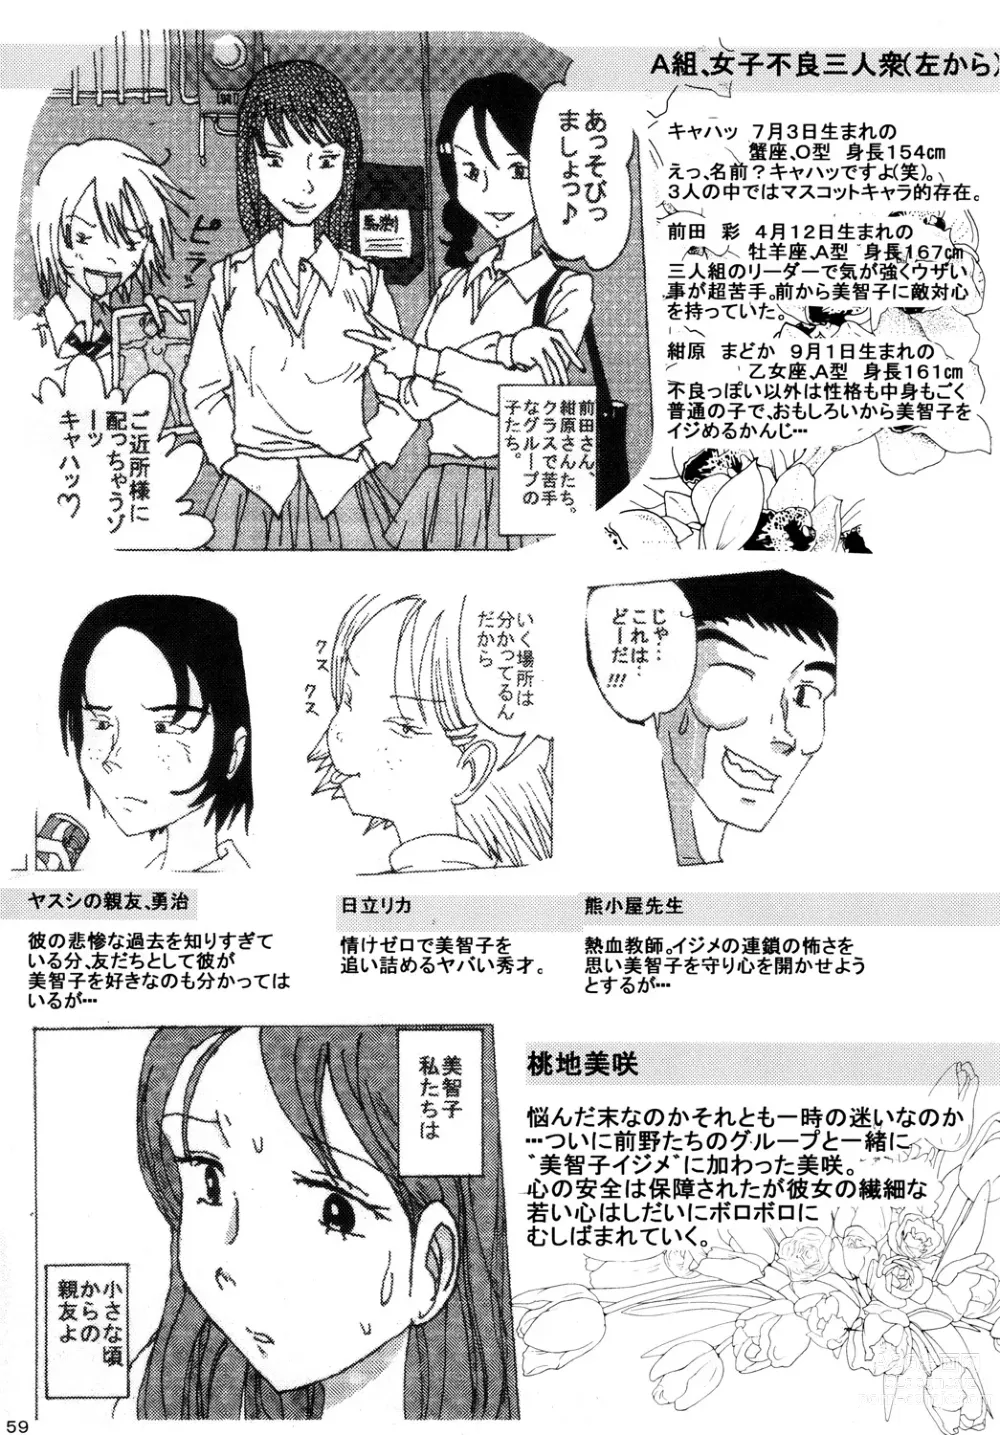 Page 58 of doujinshi Mune Ippai no Dizzy